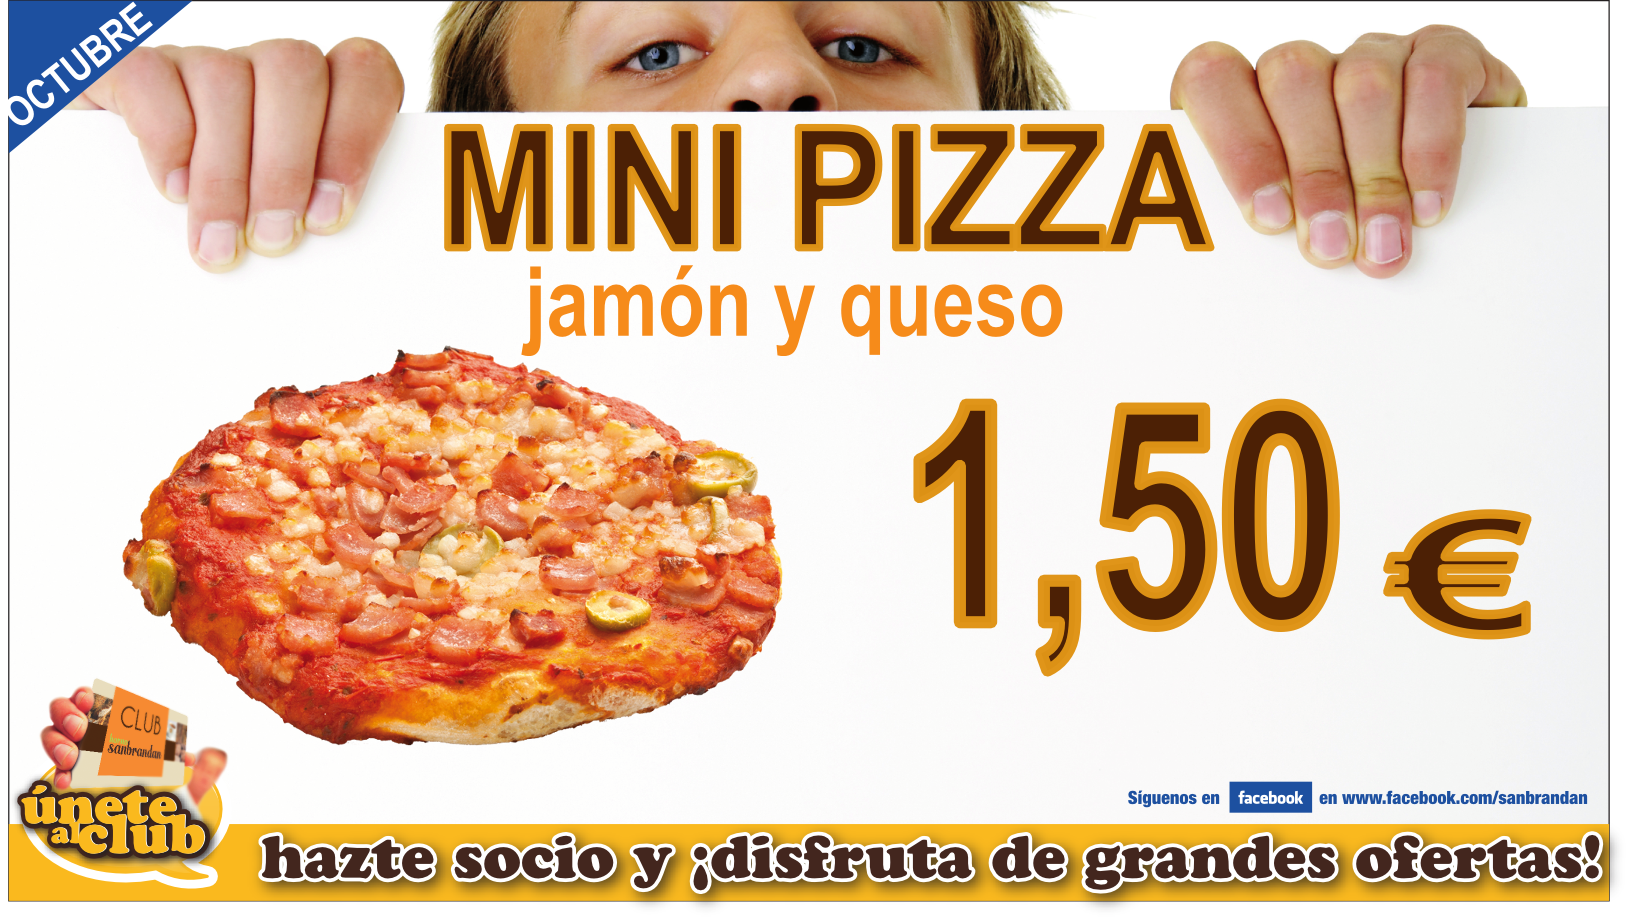 Minipizza jamón y queso 1,50 €